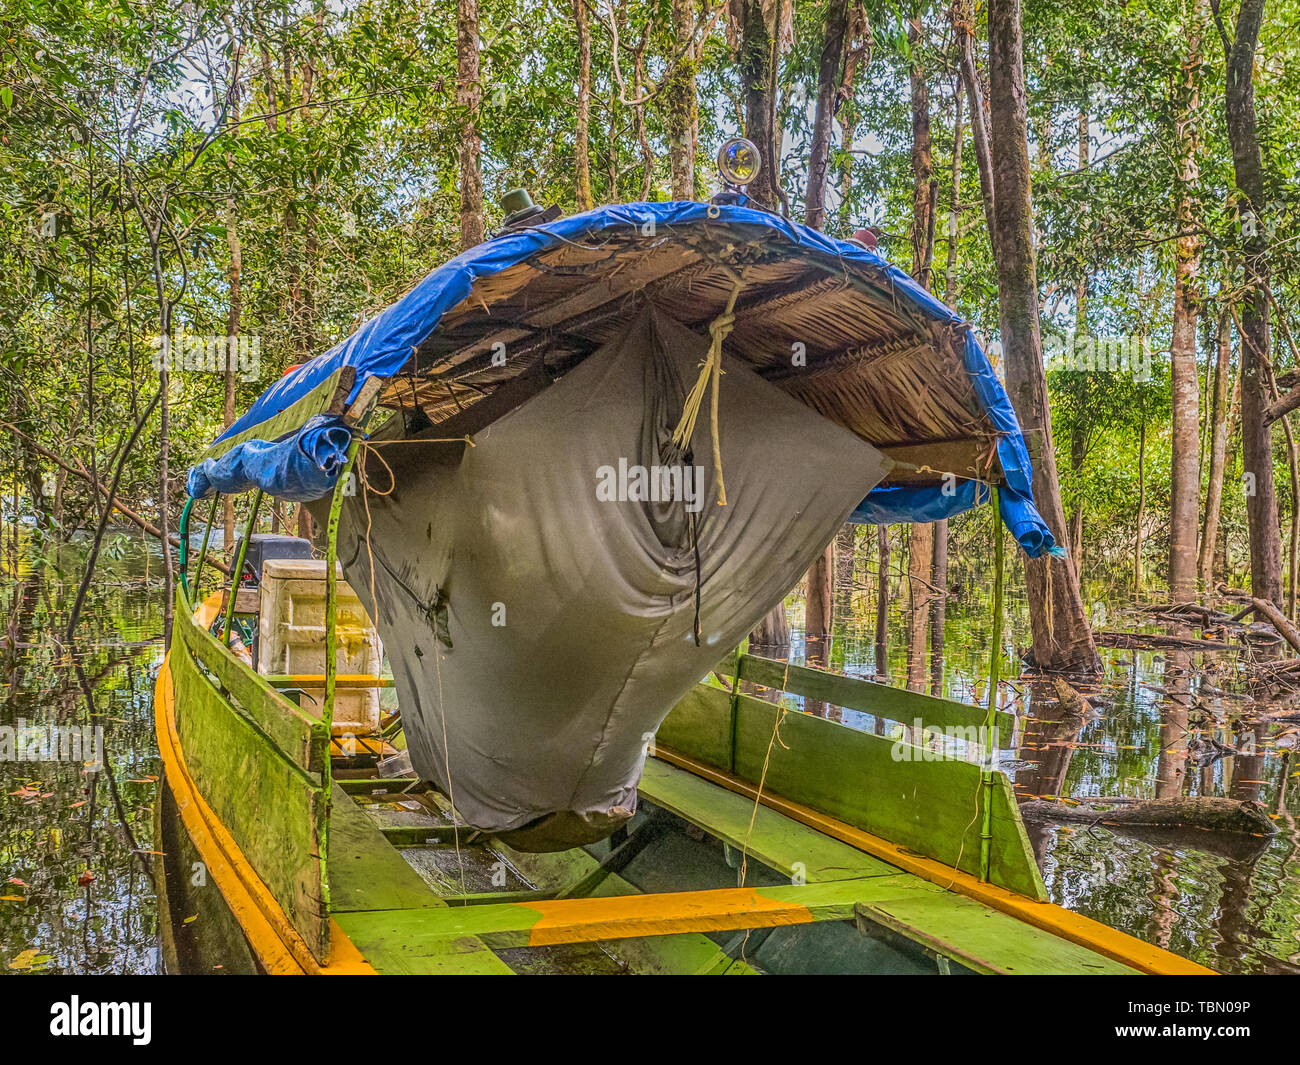 Jungle, Brazil - March 19 2018: Hammock on the boat in the amazon jungle. Selva. South America, Amazonia. Stock Photo